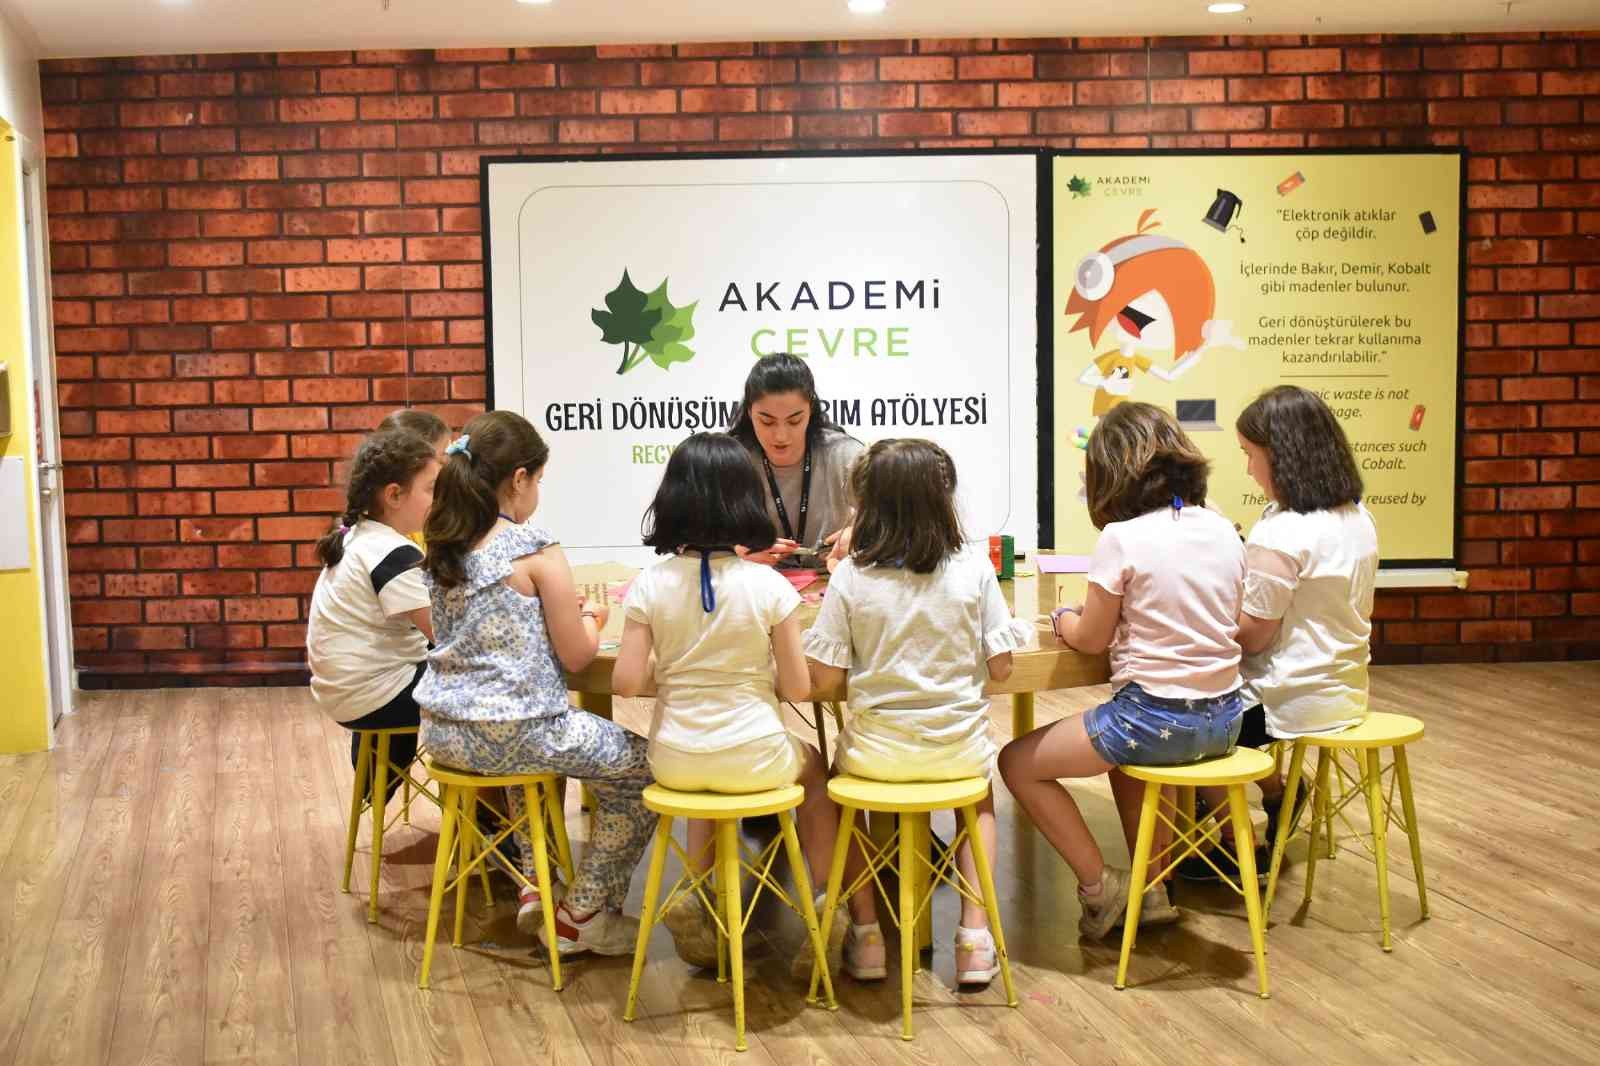 Çocuklar Ülkesi KidZania İstanbul, çocukların çevre ve dünyanın geleceği hakkında eleştirel bakış açısı kazanmalarını sağlayıp farkındalıklarını ...